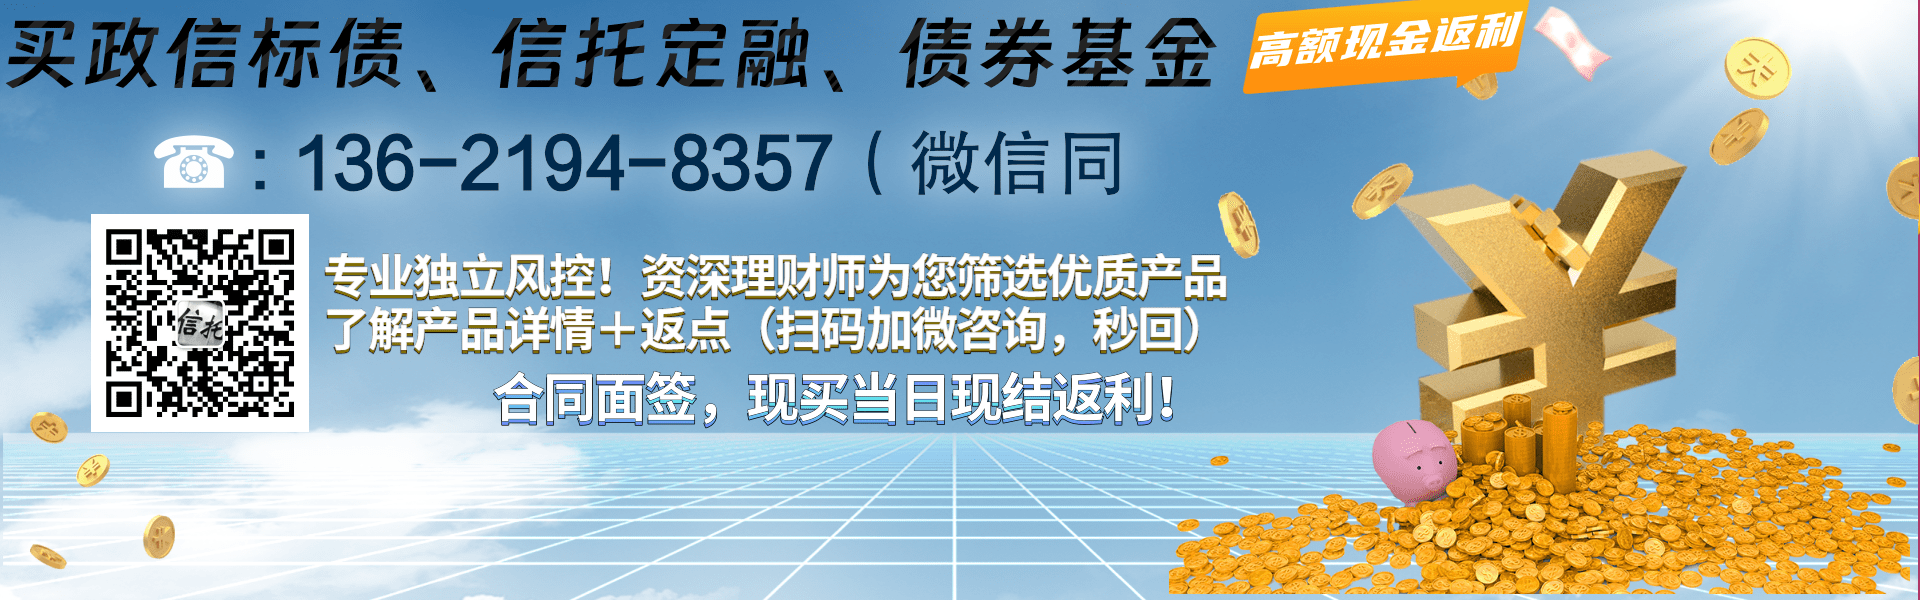 SD泰丰控股债权系列项目